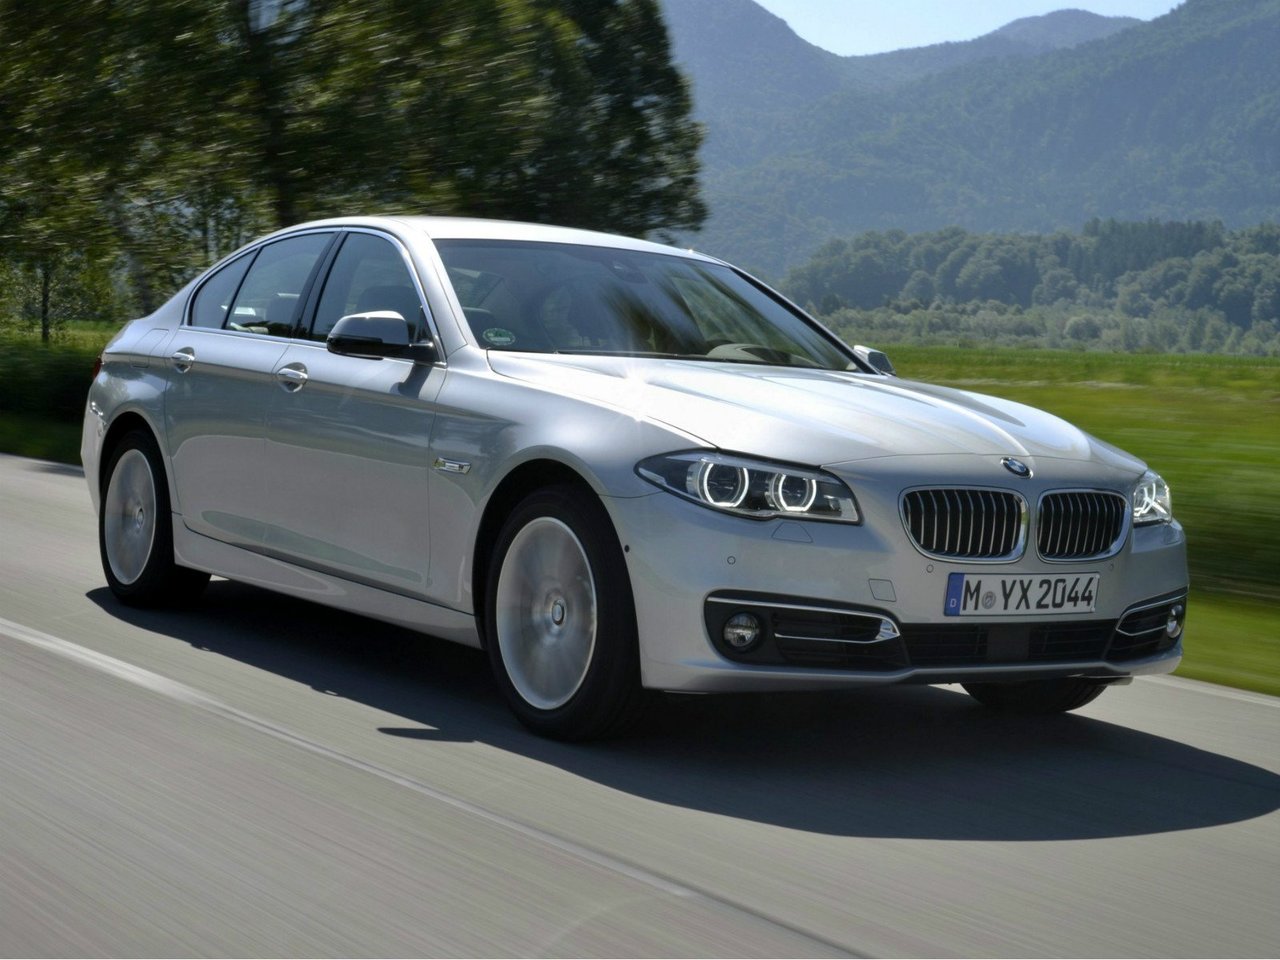 Расход газа пяти комплектаций седана BMW 5 серия. Разница стоимости заправки газом и бензином. Автономный пробег до и после установки ГБО.